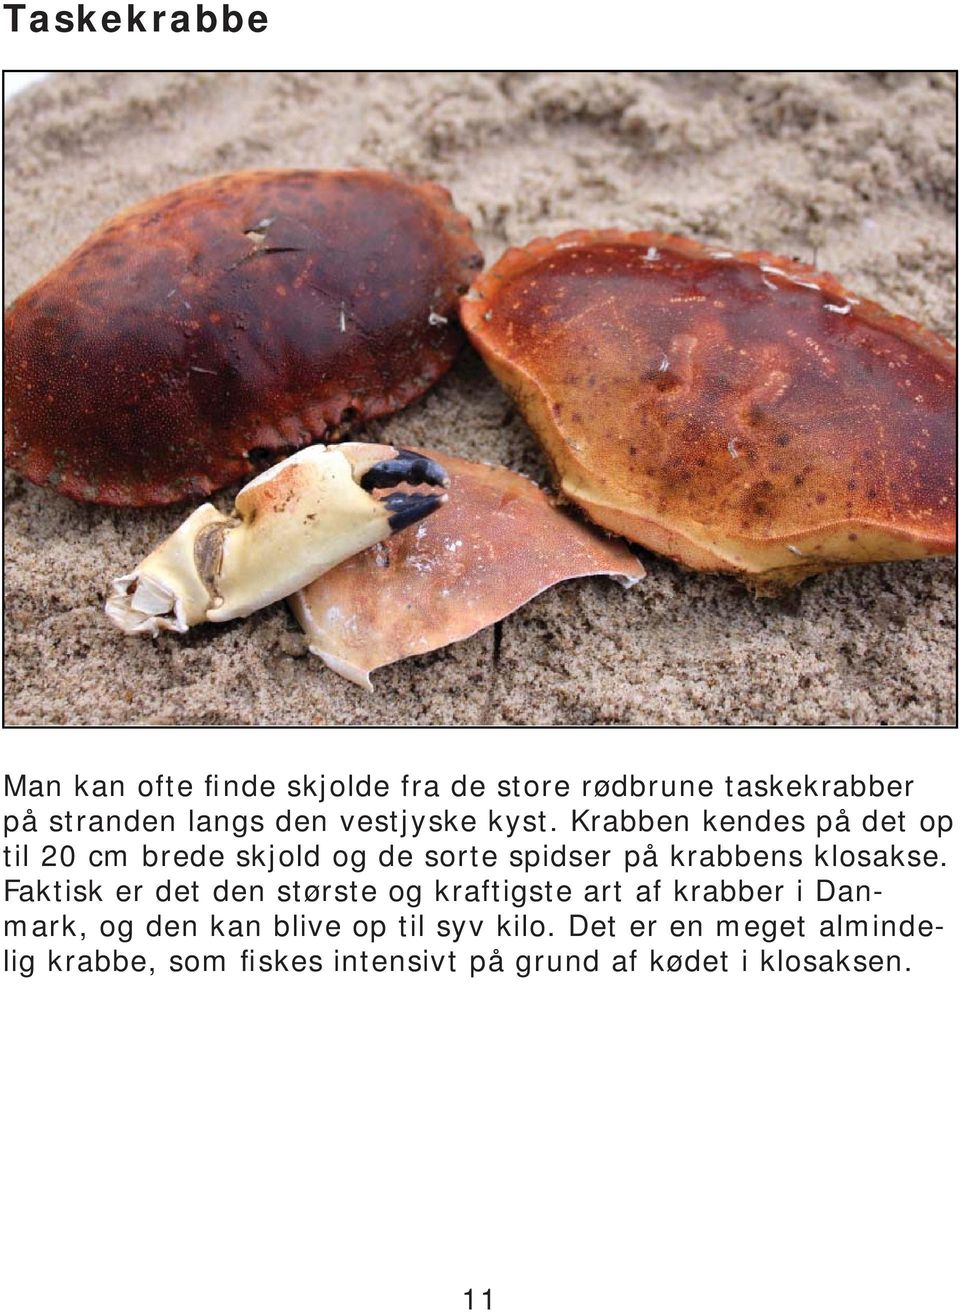 Krabben kendes på det op til 20 cm brede skjold og de sorte spidser på krabbens klosakse.